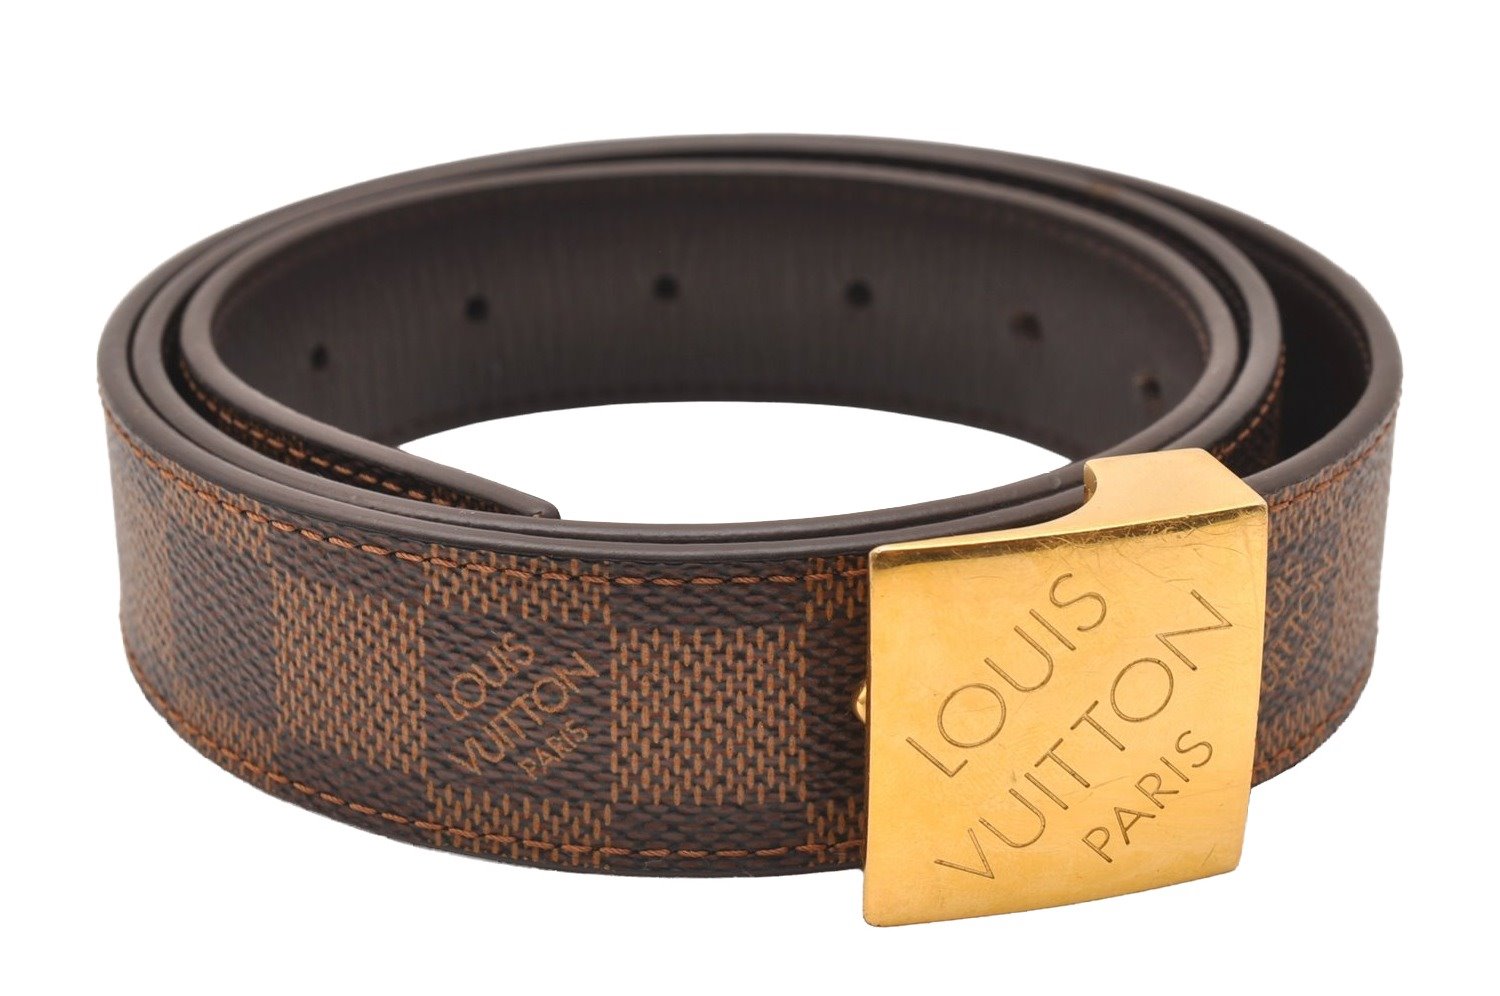 Authentic Louis Vuitton Damier Ceinture Carre Belt 95cm 37.4